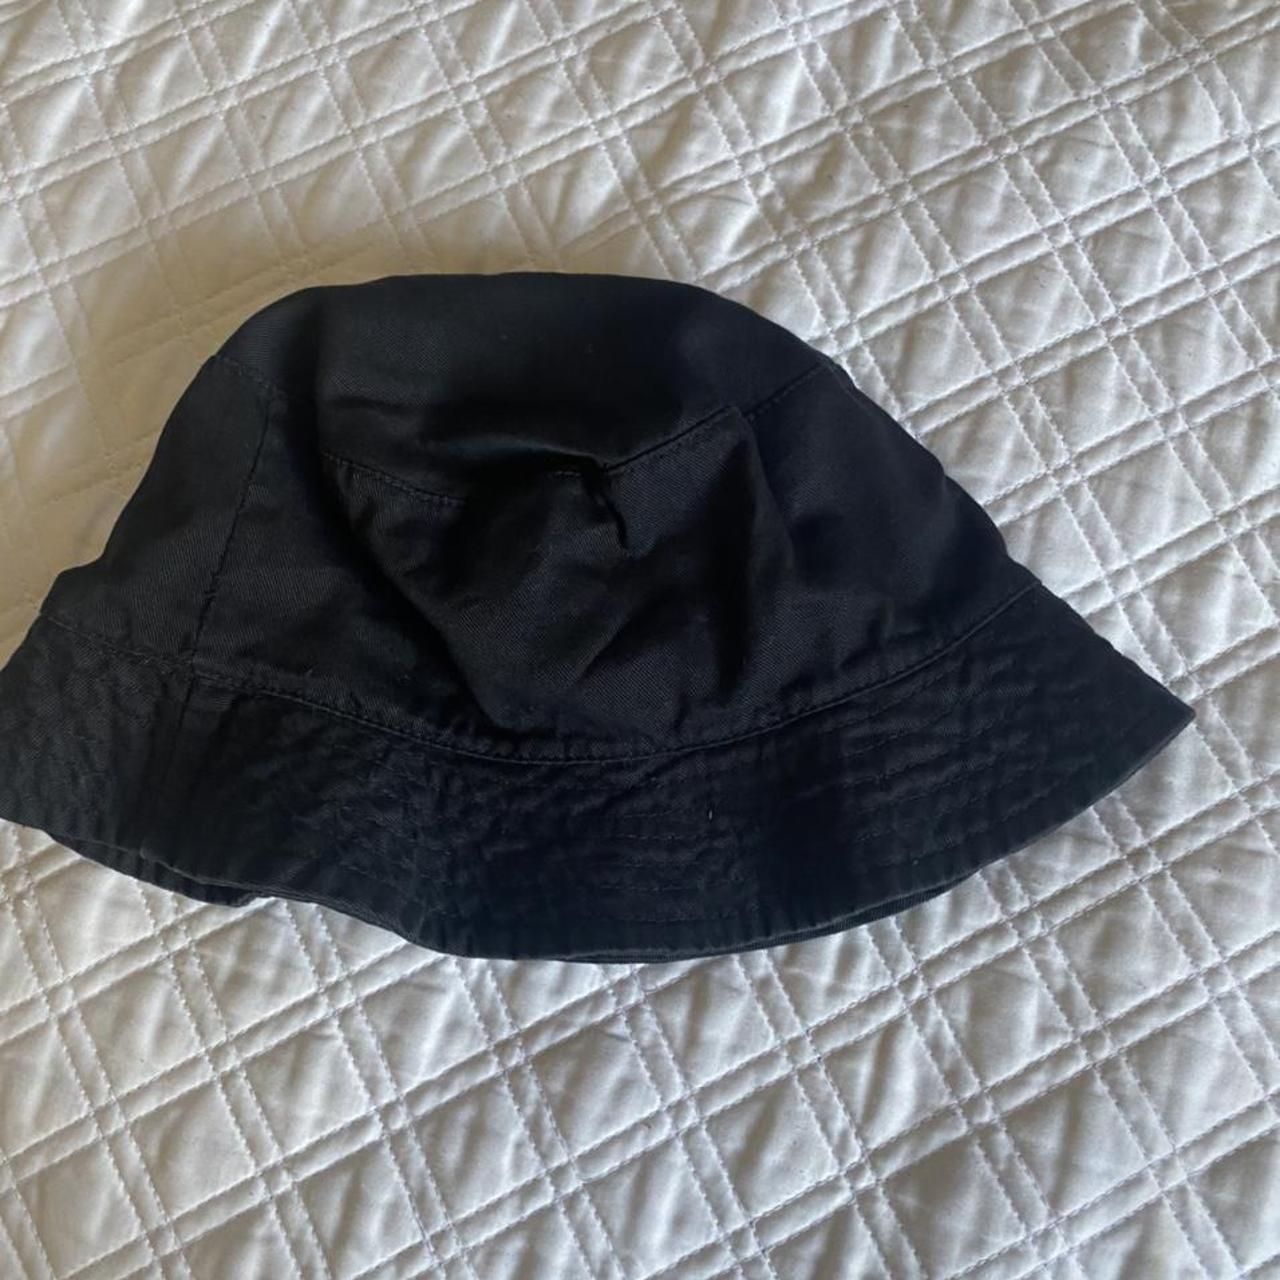 PacSun Men's Black Hat